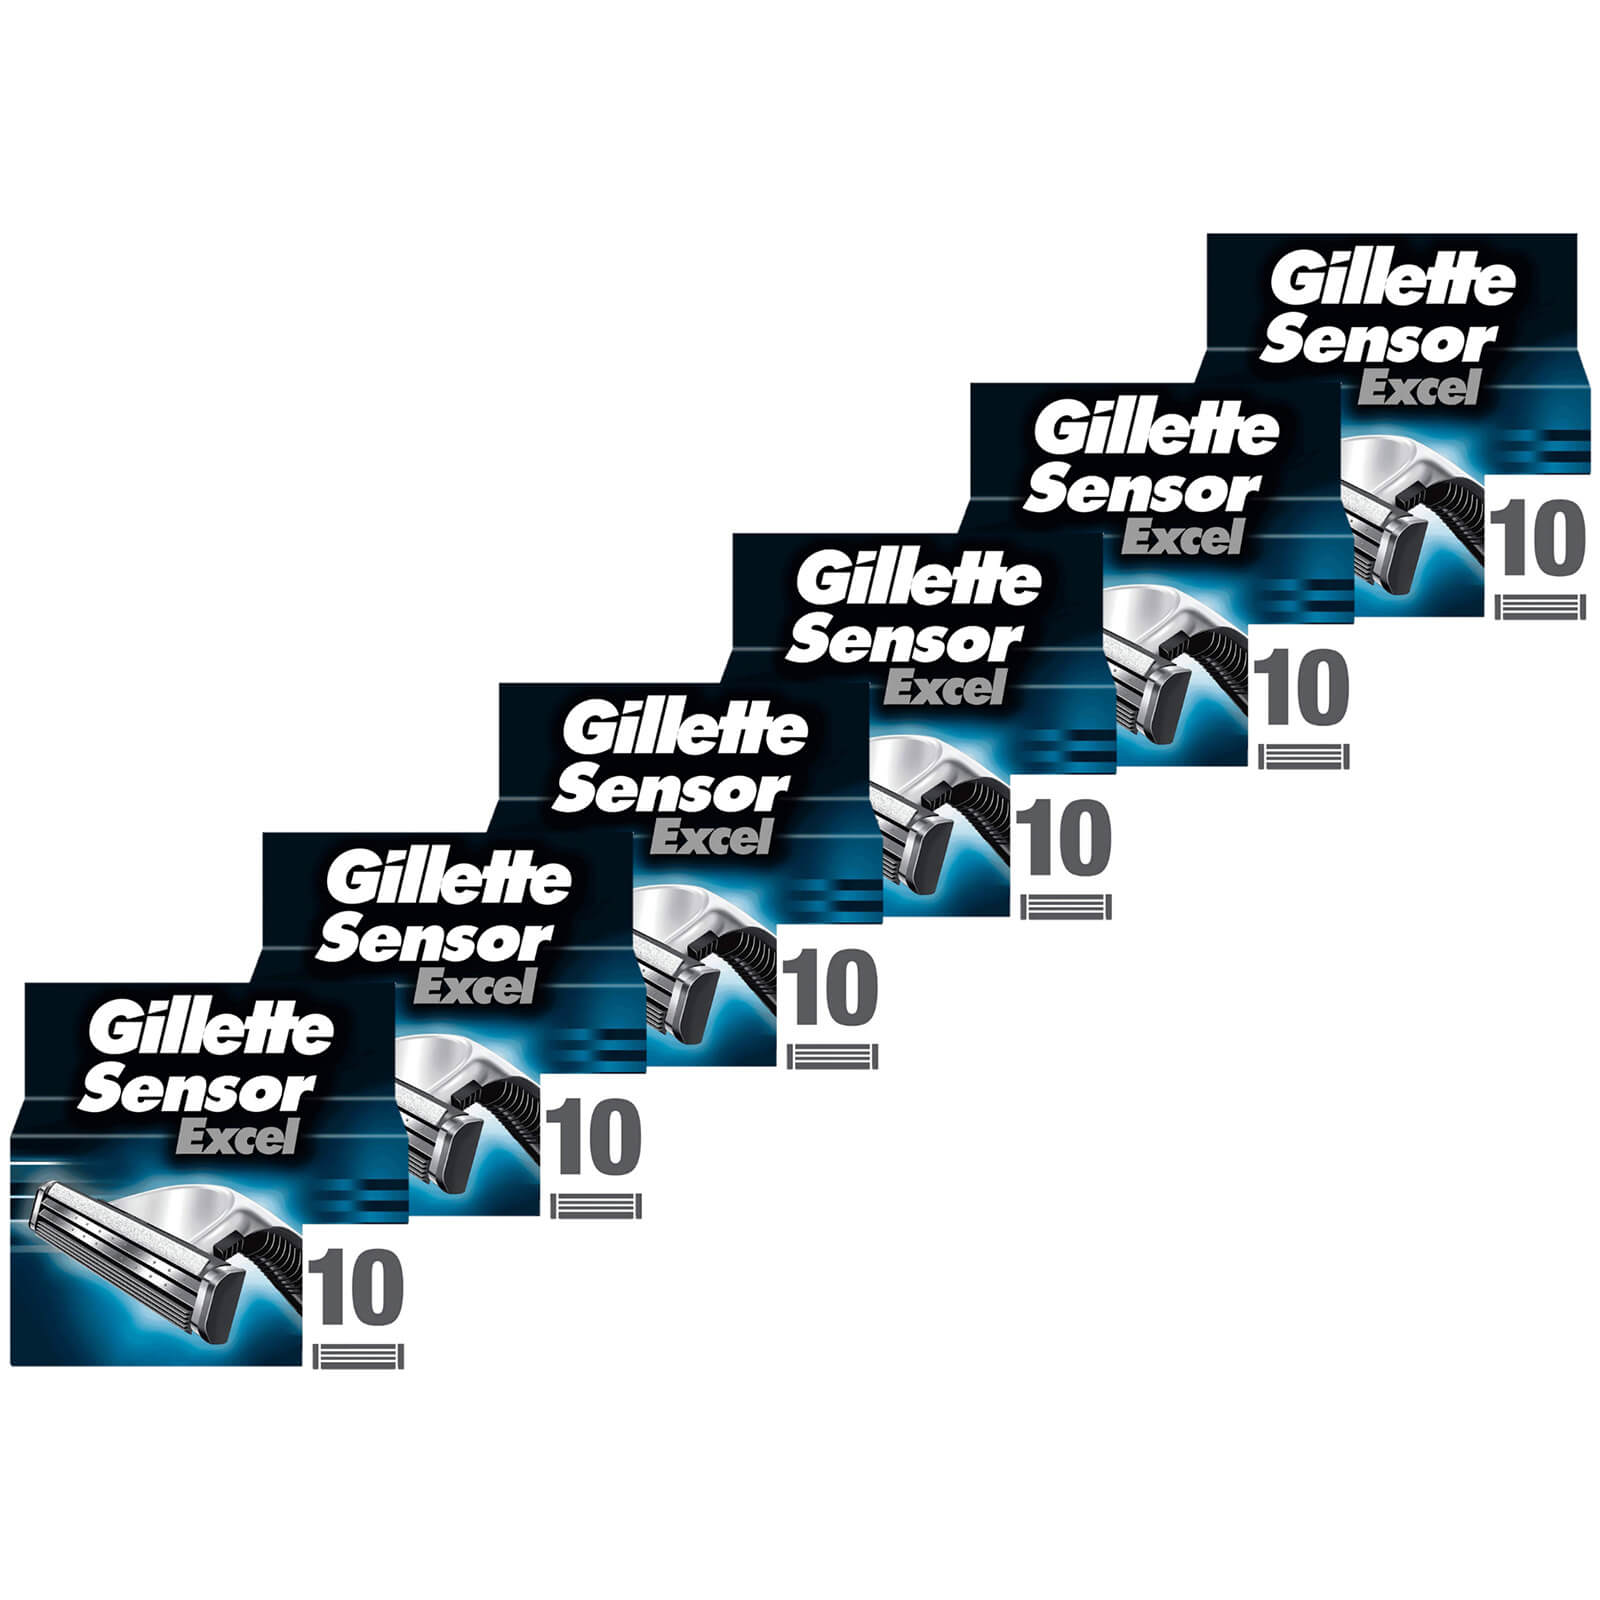 Gillette Sensor Excel Razor Blades - 60 Pack - 6 Months